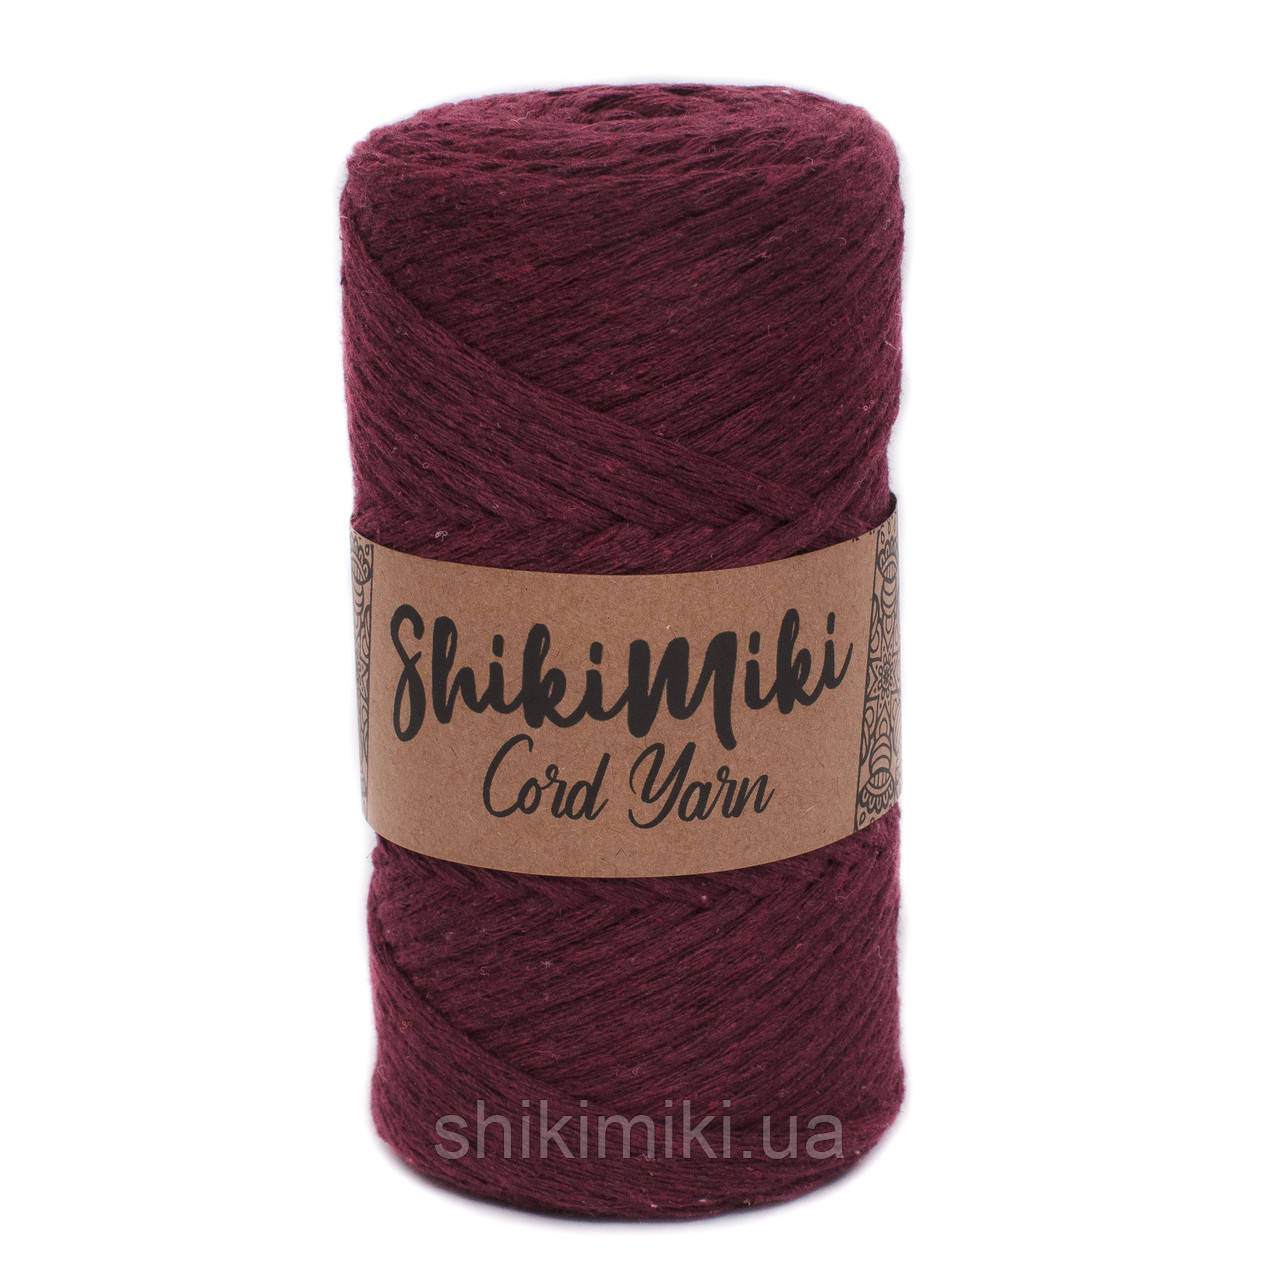 Еко шнур Shikimiki Cord Yarn 4 mm, колір Бургунді